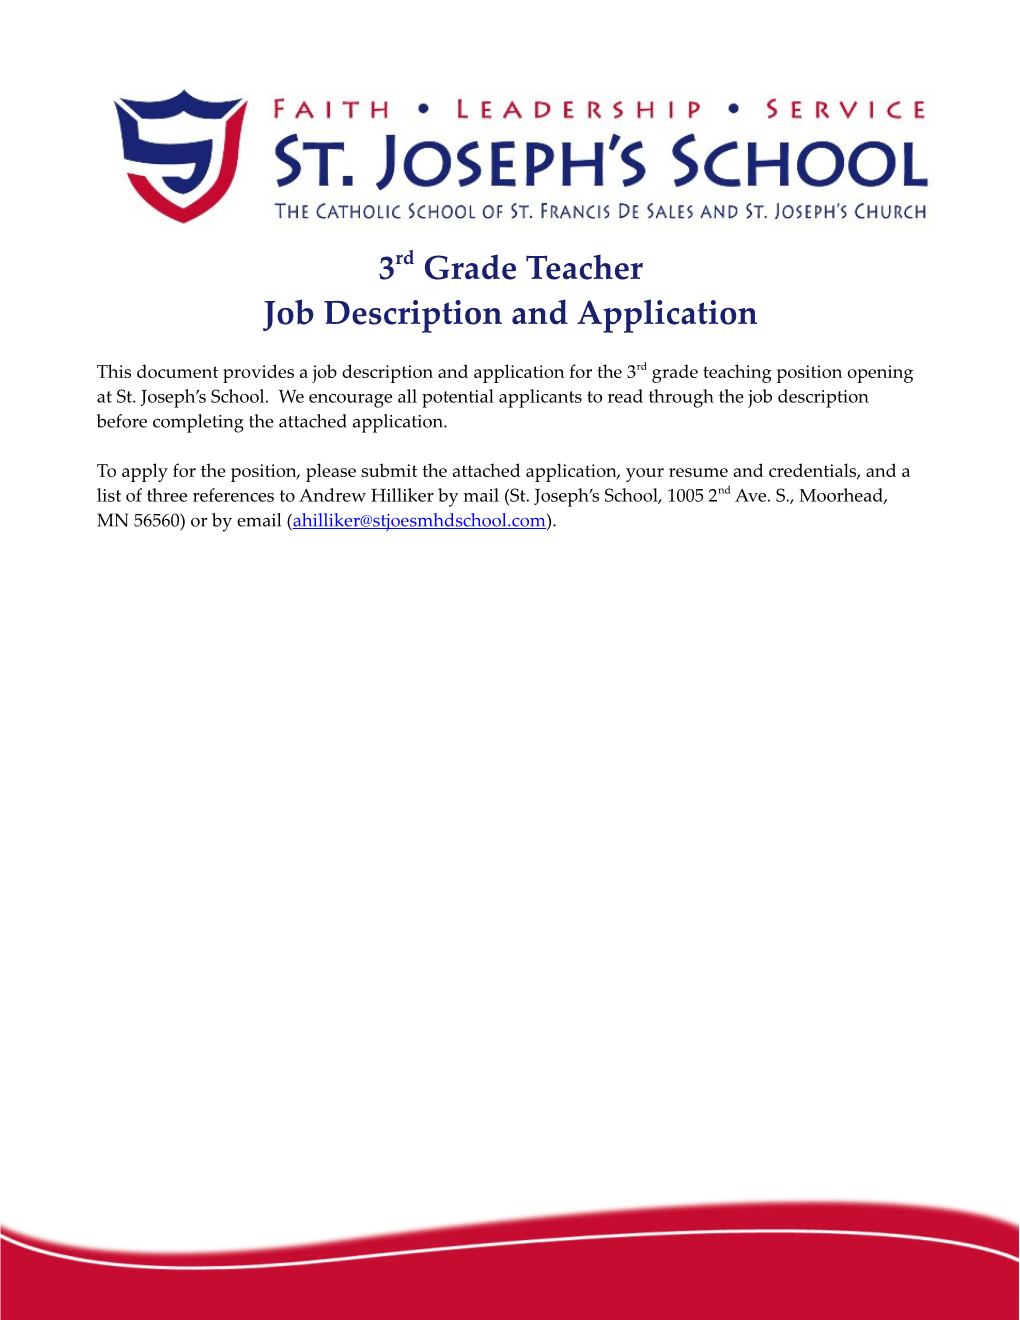 Job Description and Application